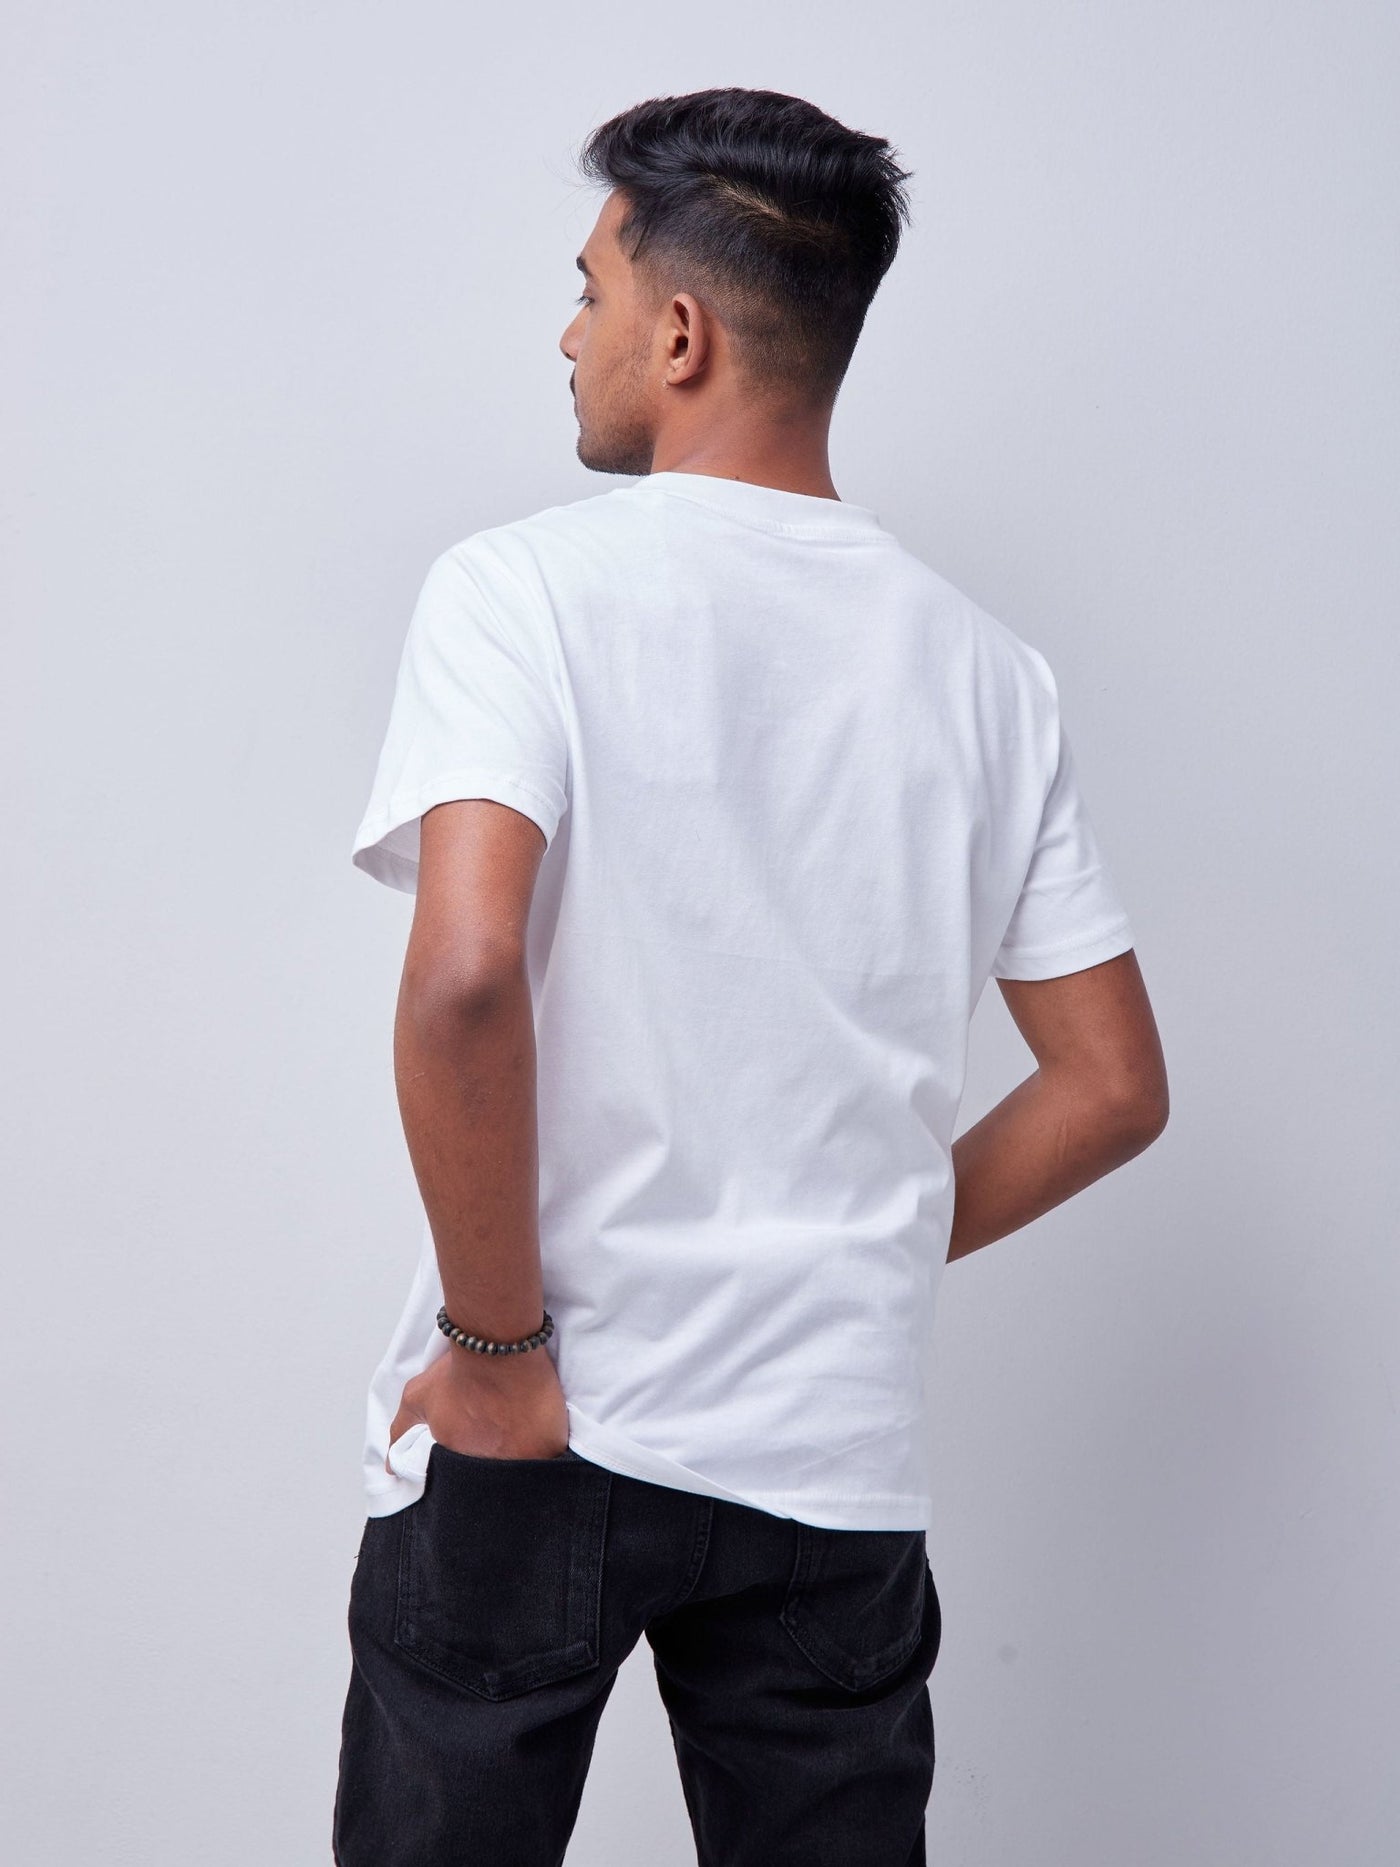 King's Collection Unisex Round Neck T-shirt - White - Shop Zetu Kenya